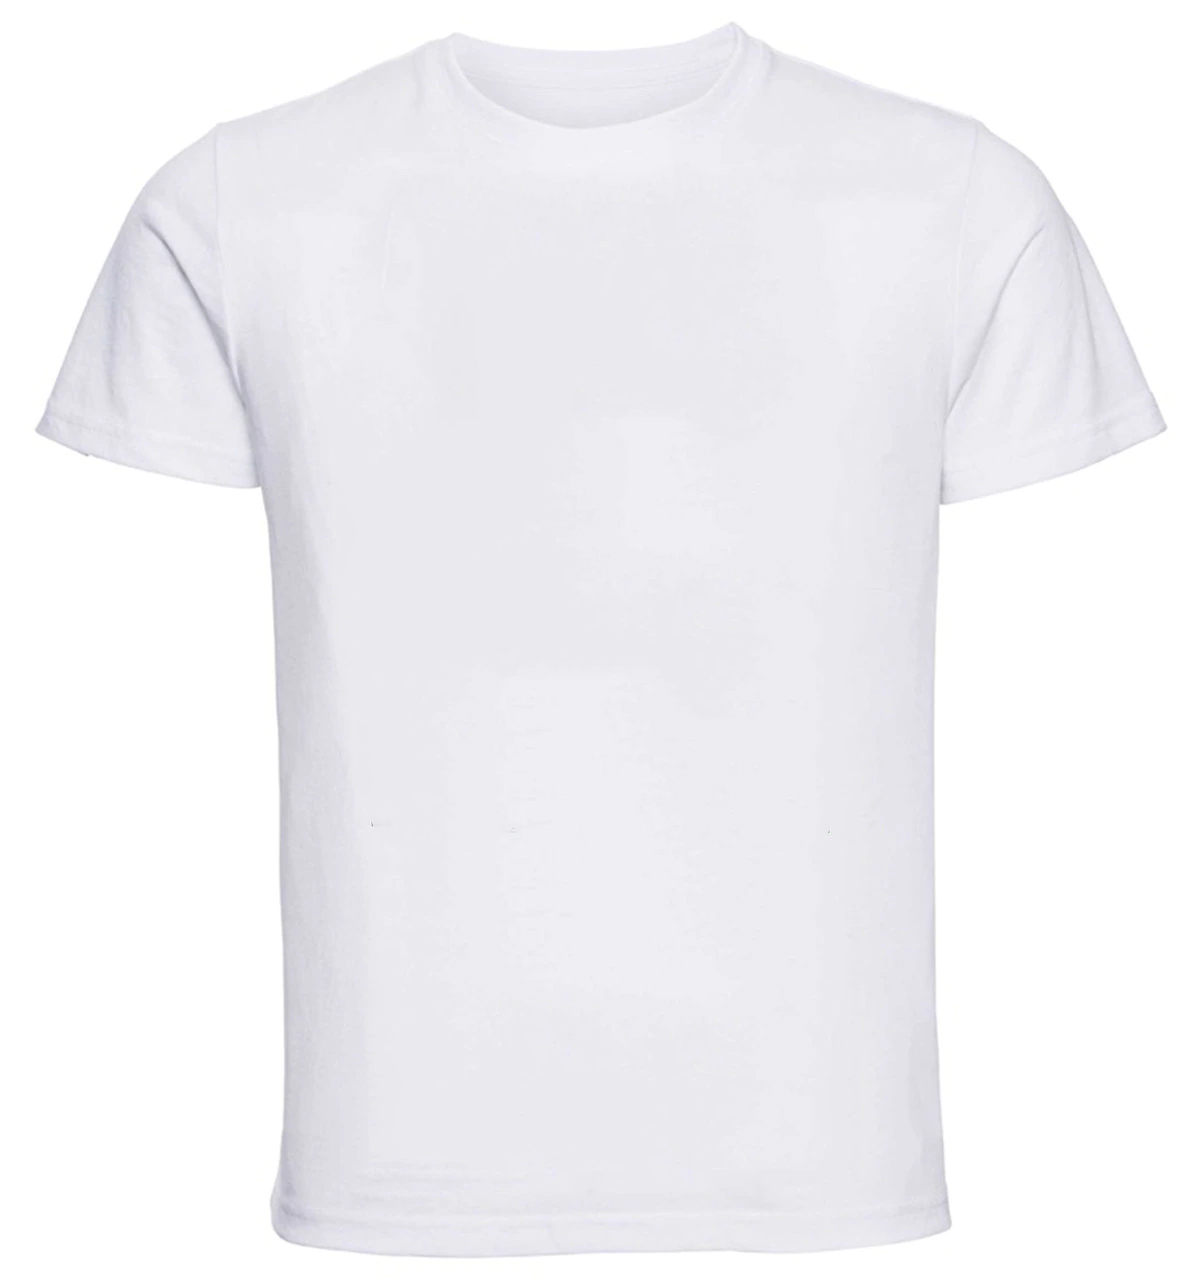 White Tshirt - SnapPrintShop